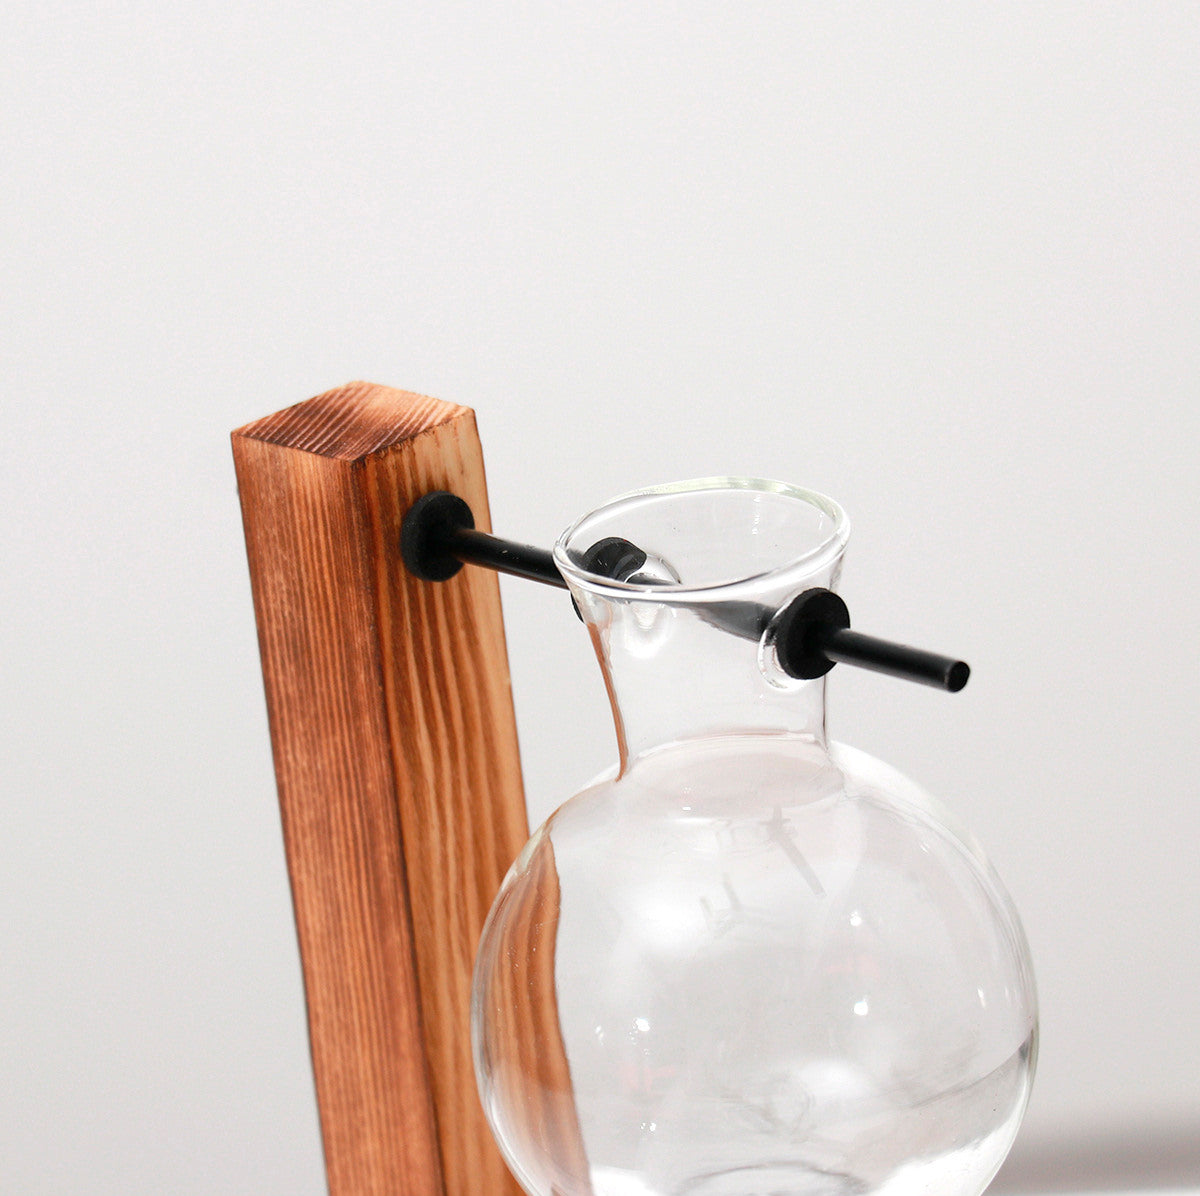 Vaso de vidro sofisticado para planta 6